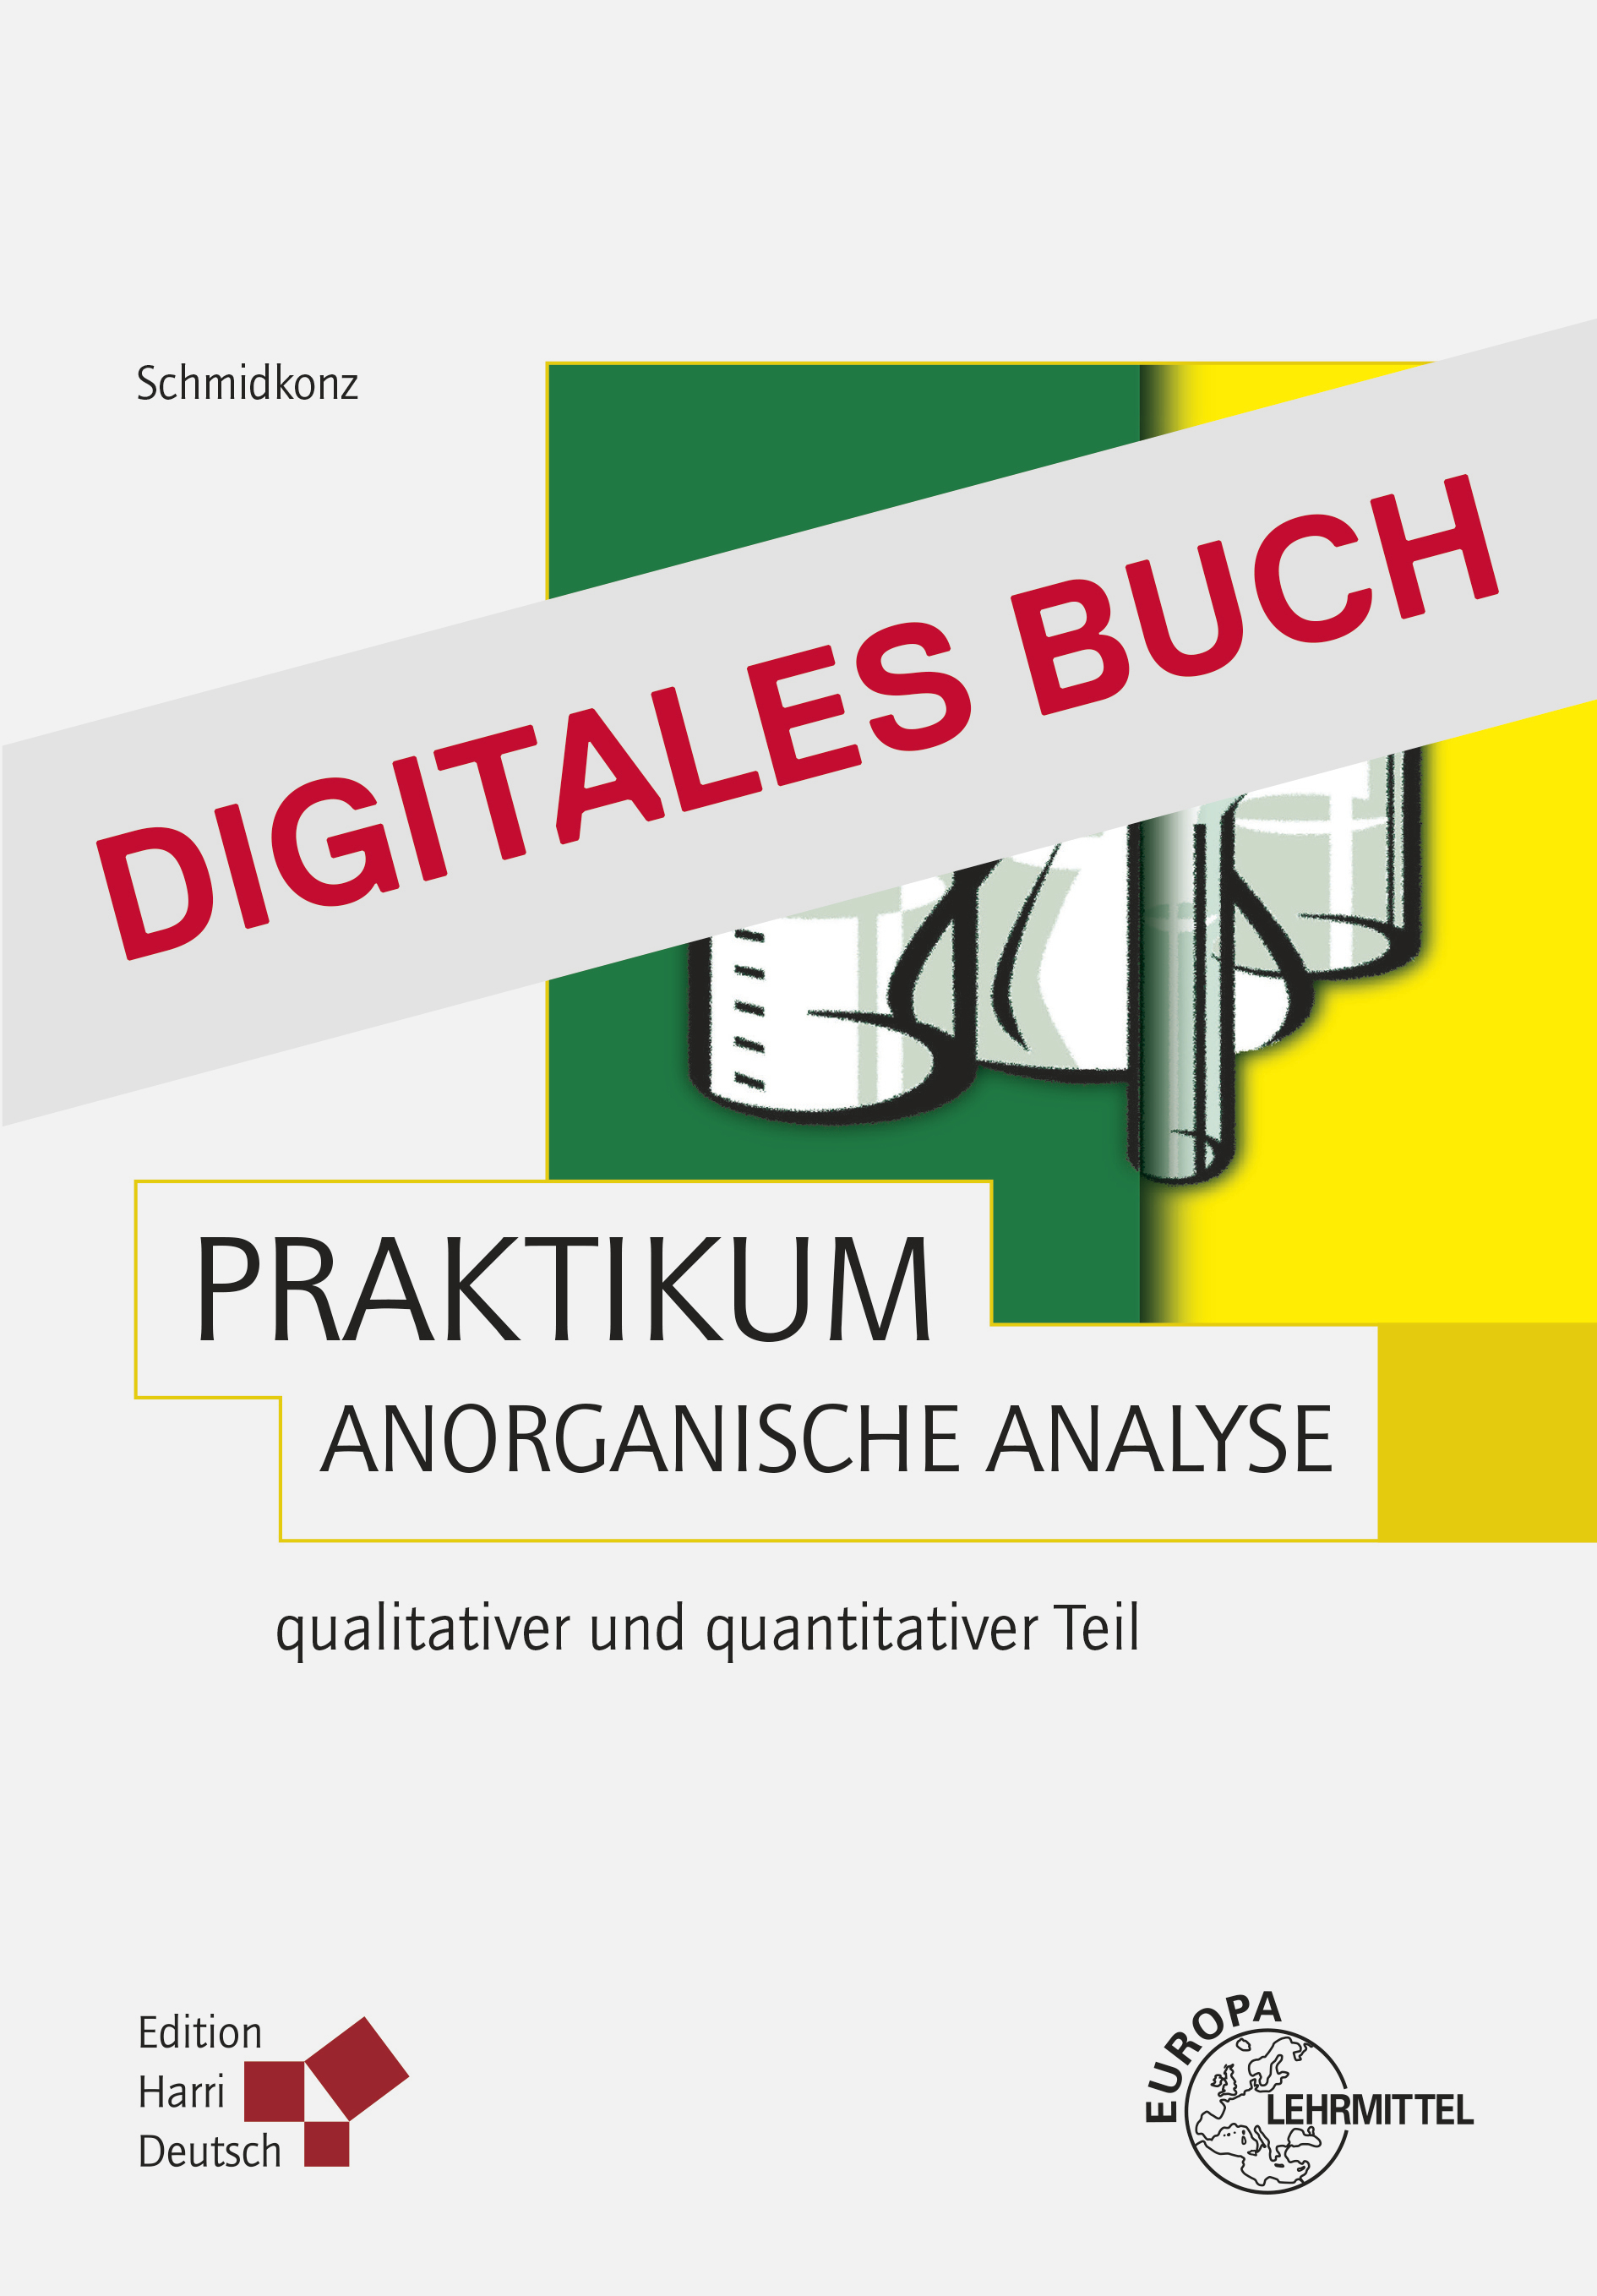 Praktikum Anorganische Analyse - Digitales Buch